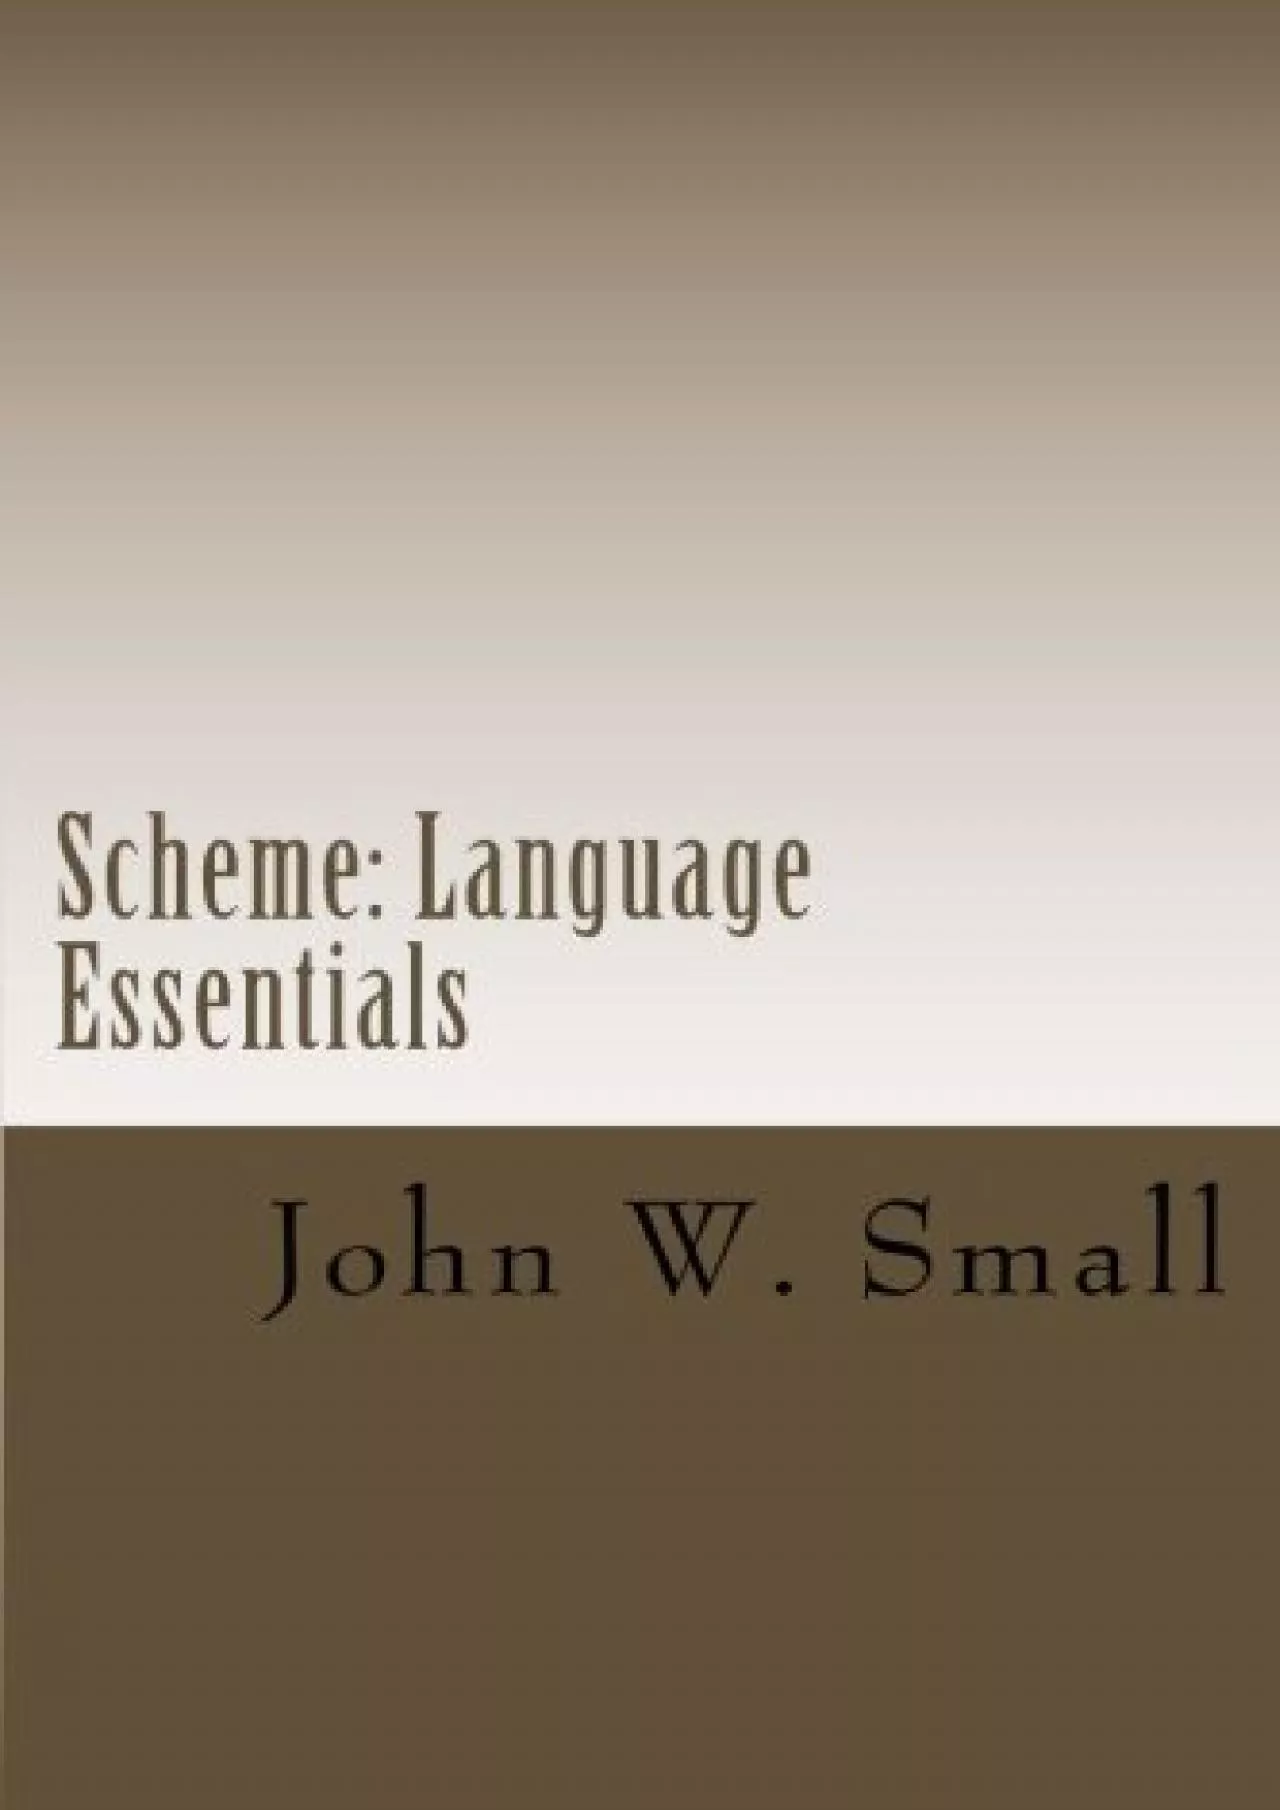 [FREE]-Scheme: Language Essentials